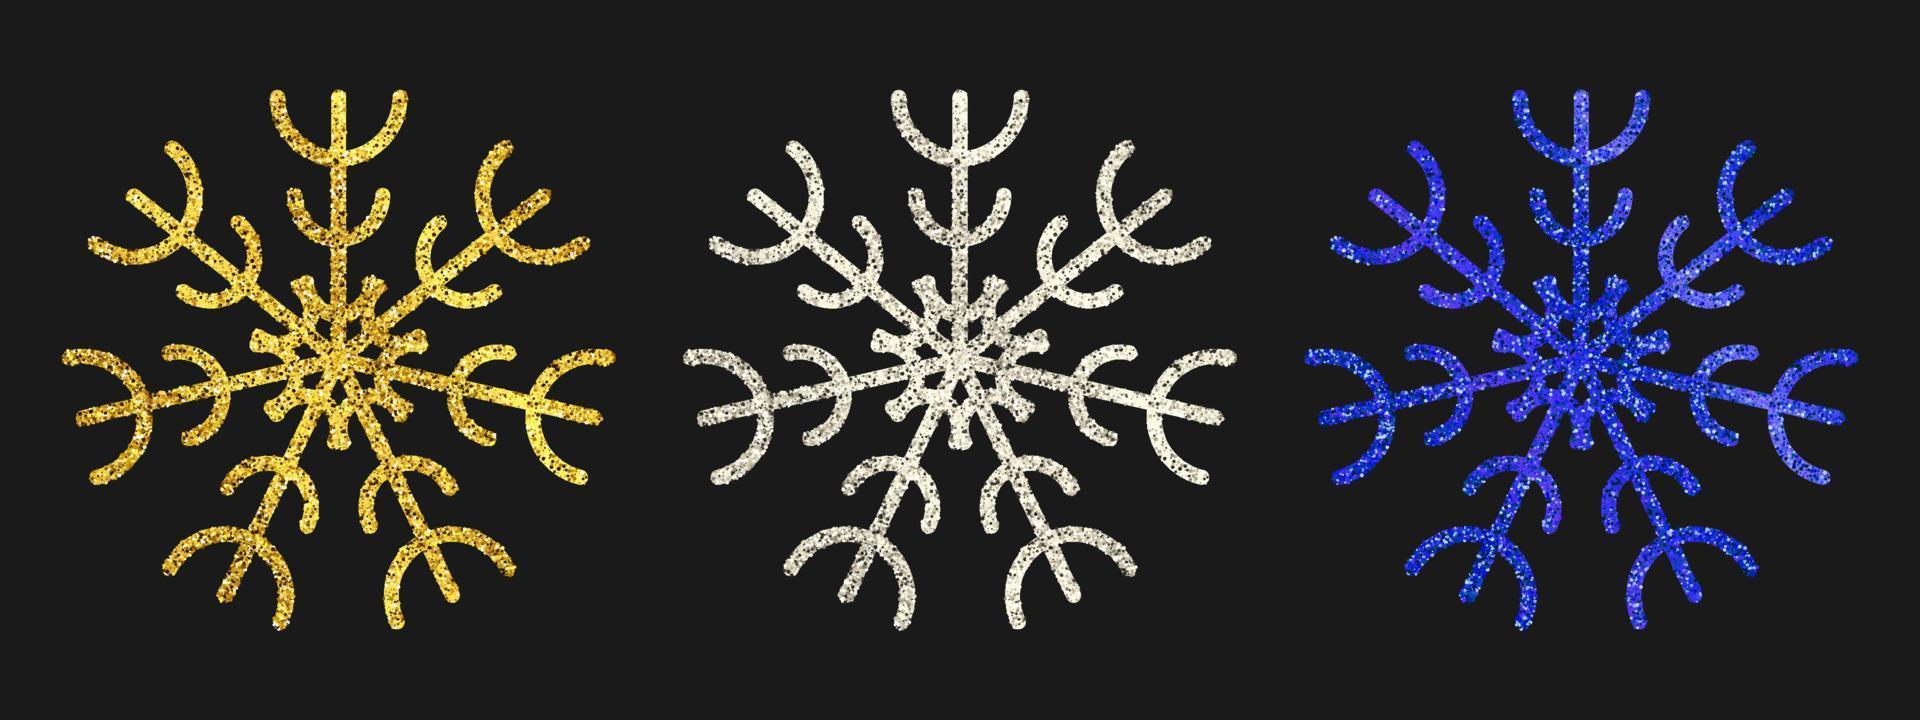 Glitzerschneeflocken auf dunklem Hintergrund. Set aus drei goldenen, silbernen und blauen Glitzerschneeflocken. weihnachts- und neujahrsdekorationselemente. Vektor-Illustration. vektor